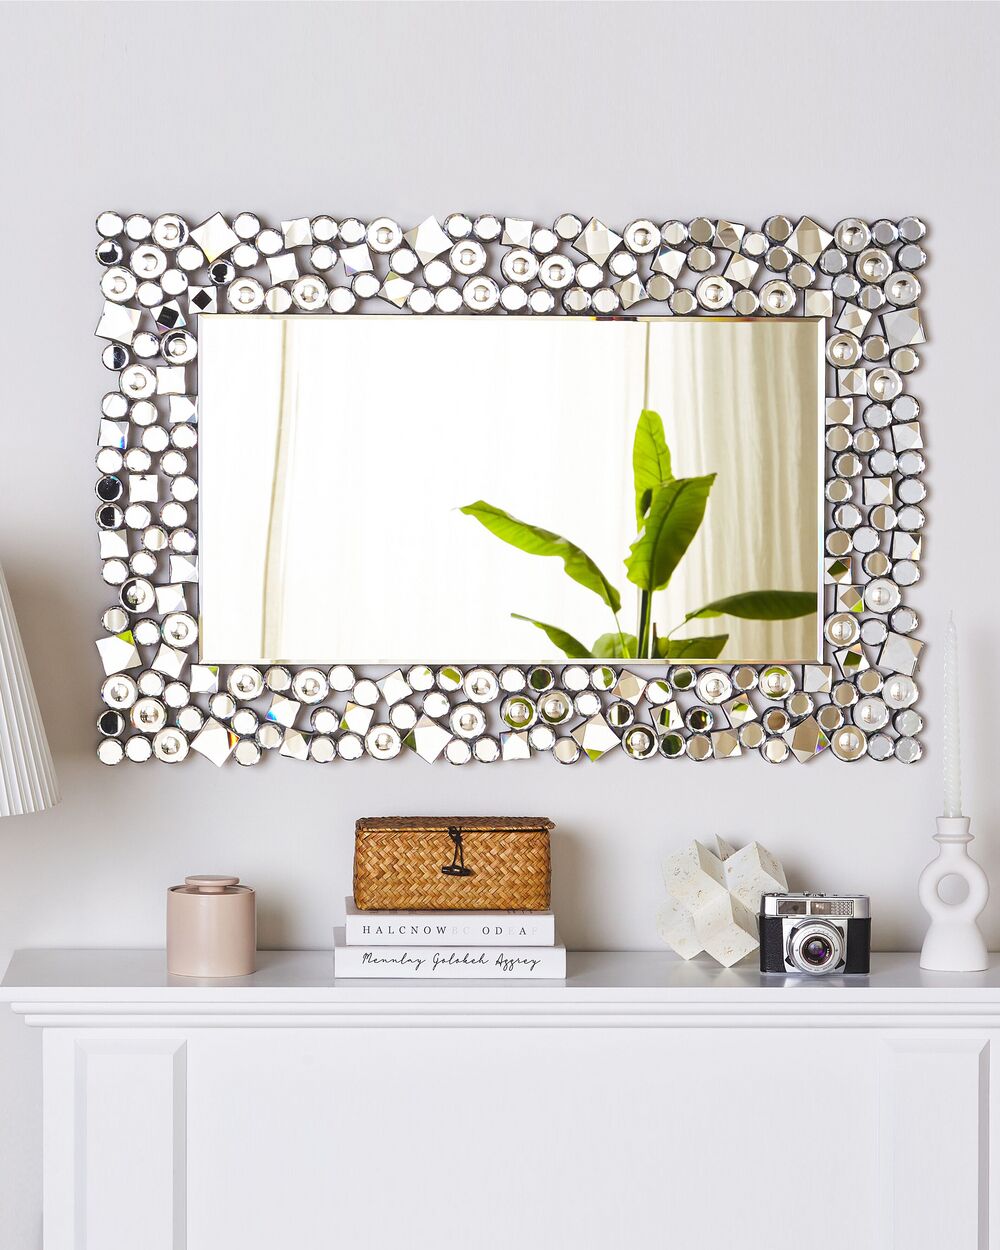 Specchio moderno da parete con cornice nera 61 x 91 cm LUNEL